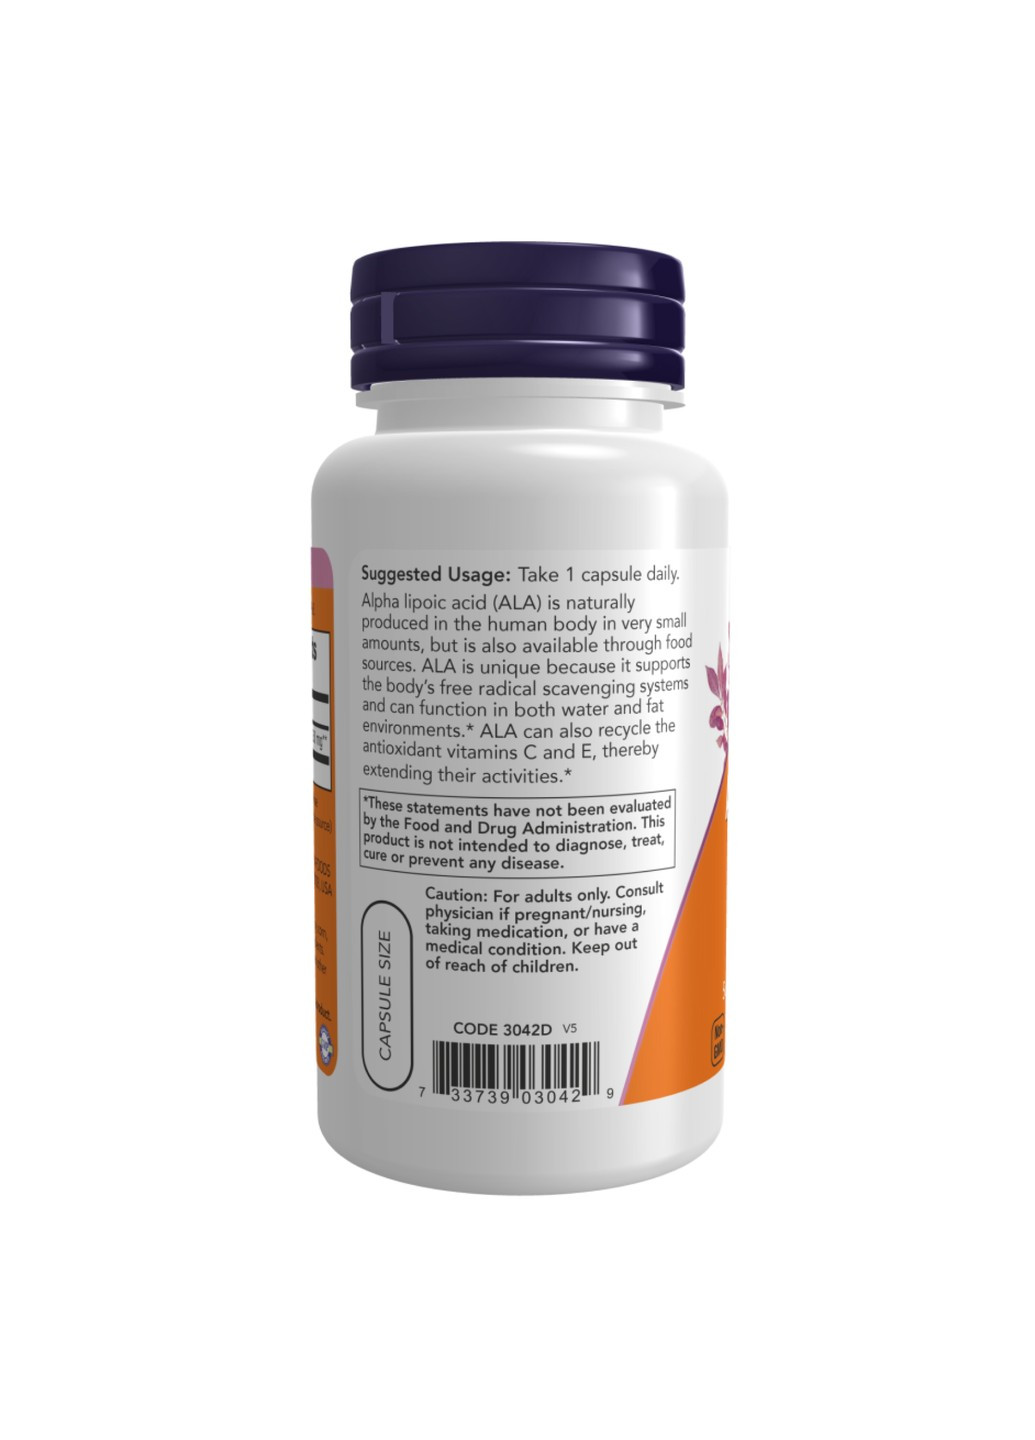 Альфа-Липоевая Кислота Alpha Lipoic Acid 250 мг – 120 вег.капсул Now Foods (276002617)